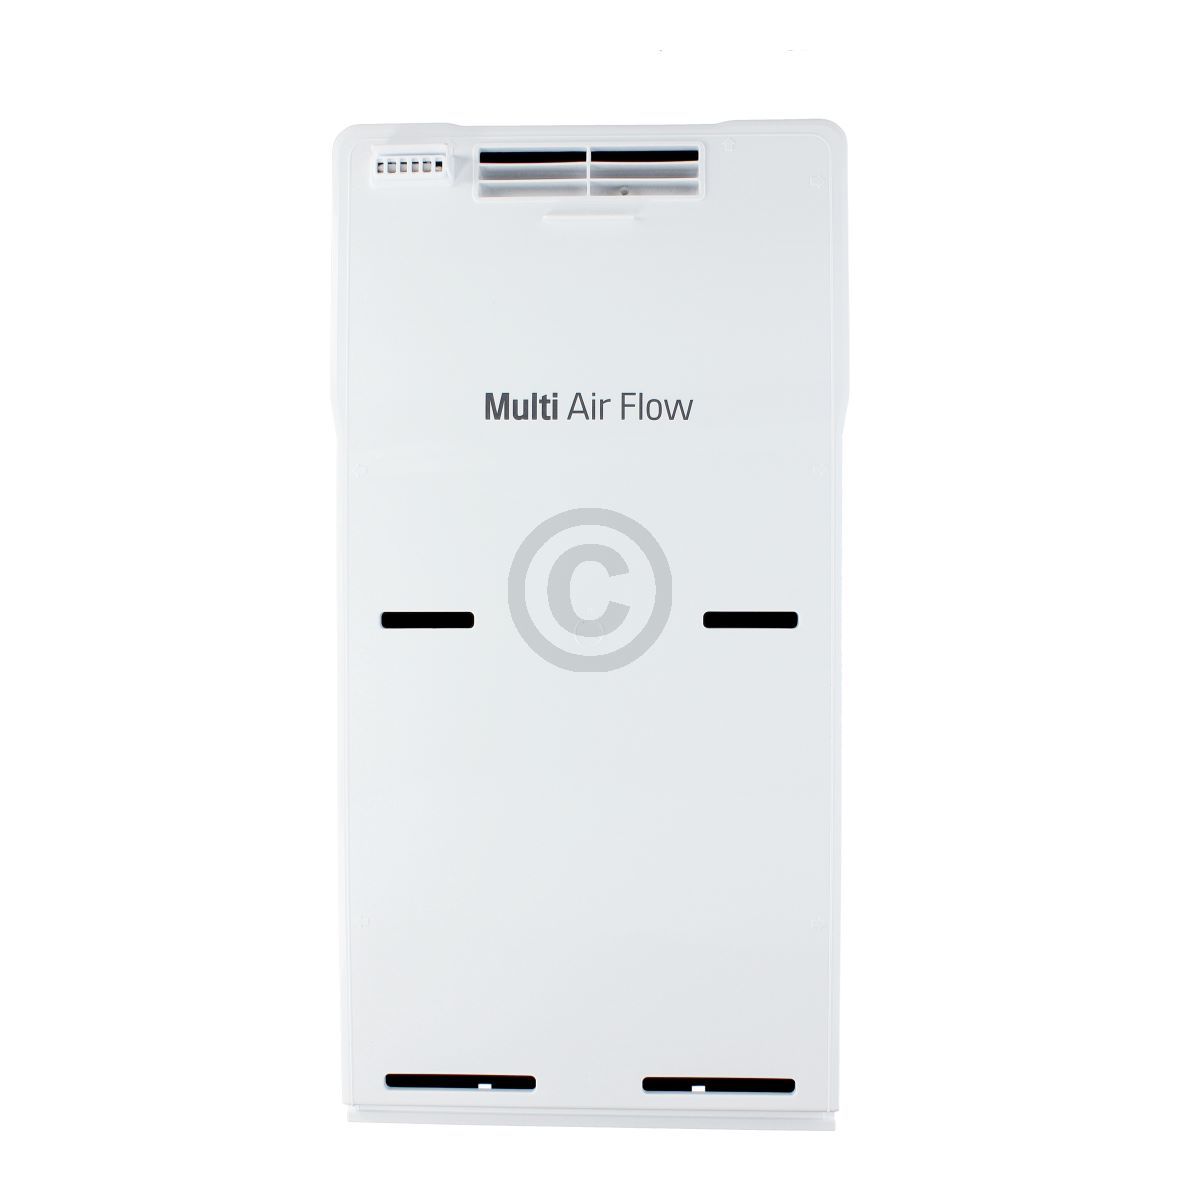 Ventilator LG AEB73224806 Multi Air Flow Lüfter für Kühlschrank